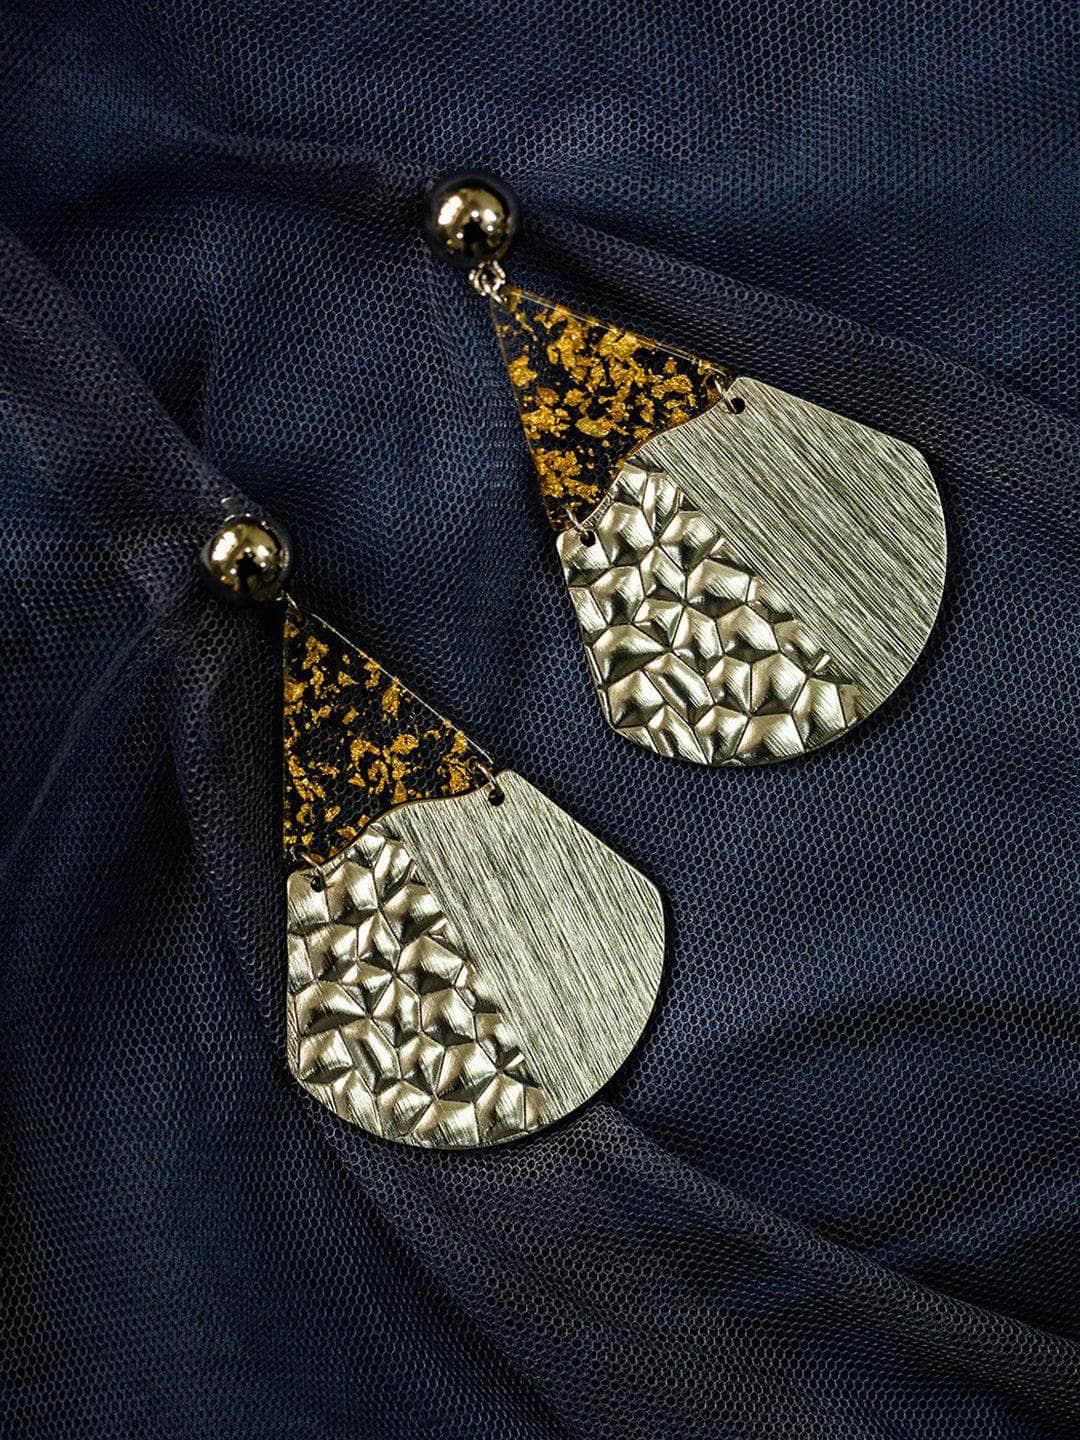 Ishhaara Fan Earrings Silver